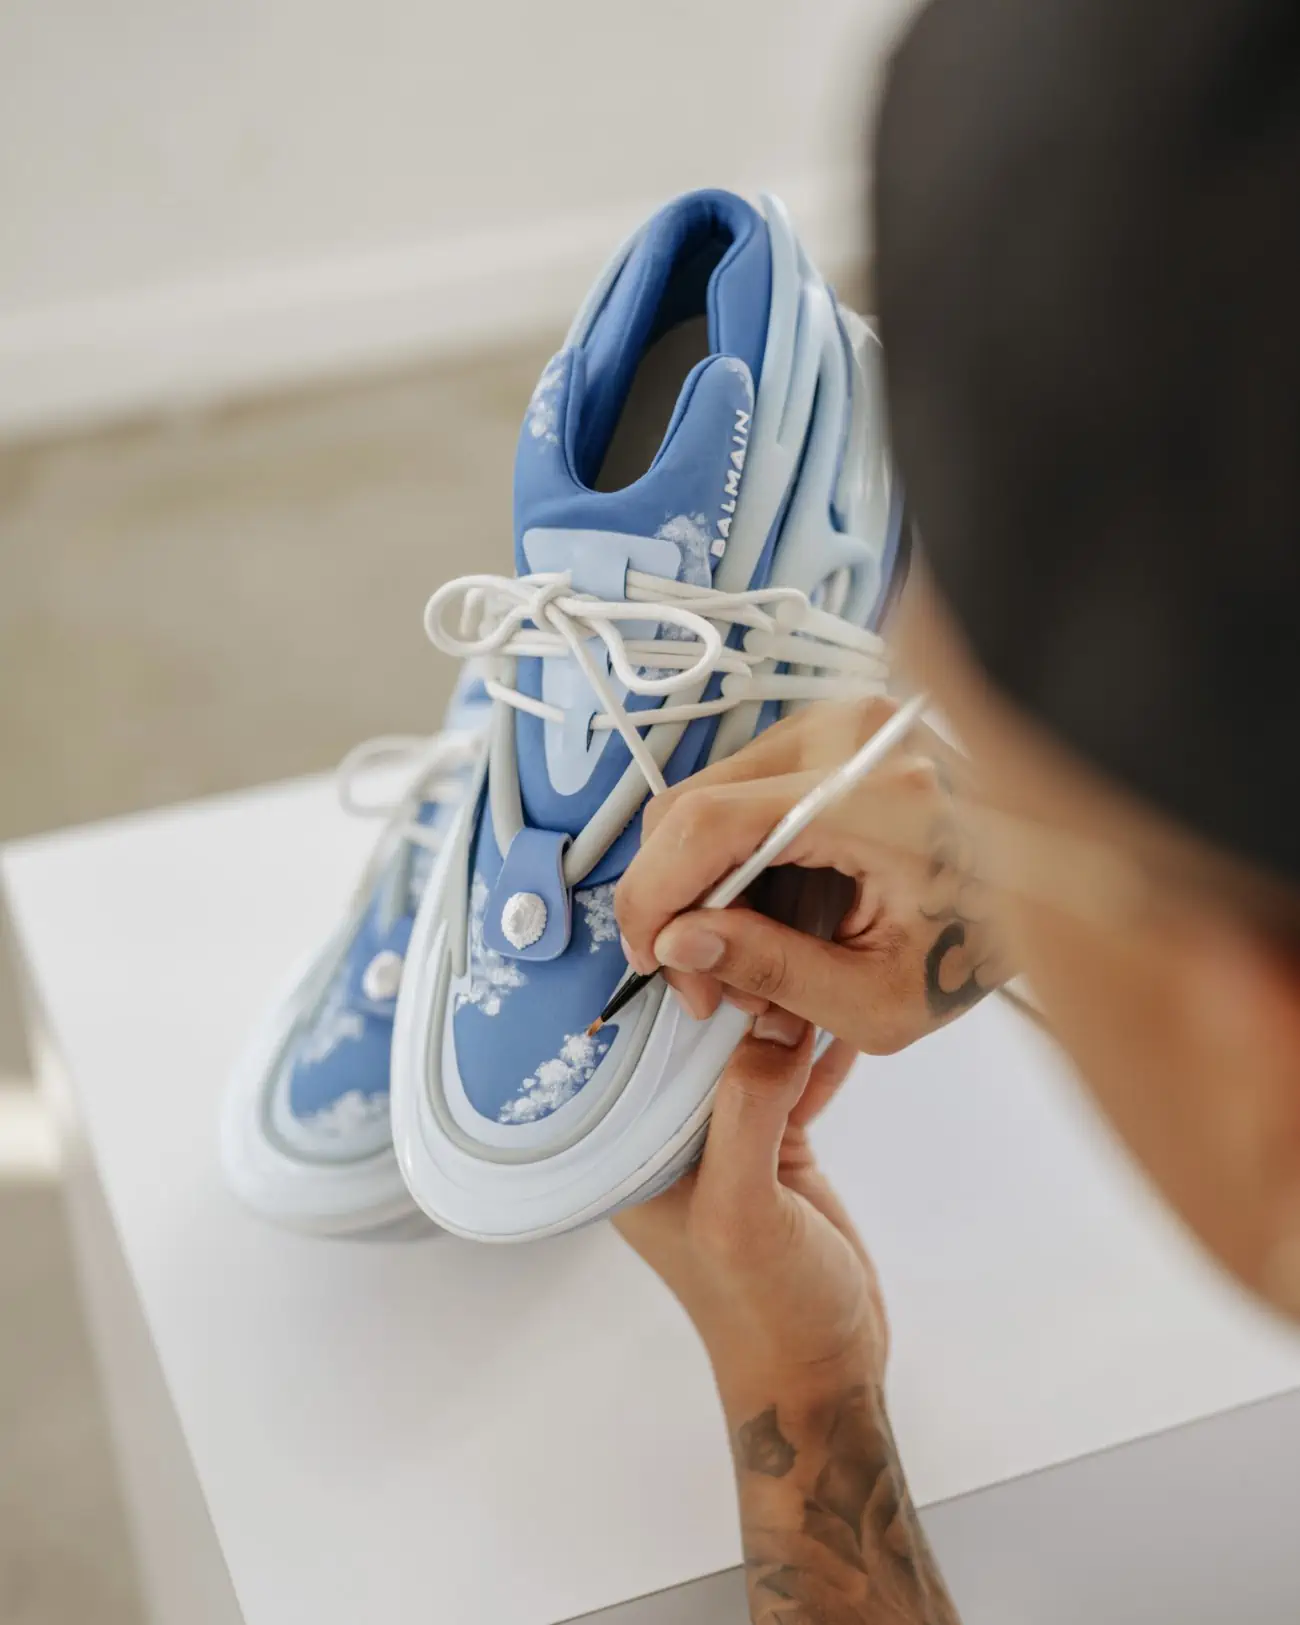 Balmain collaborates with artist Ant Kai for a fresh take on the Unicorn sneaker